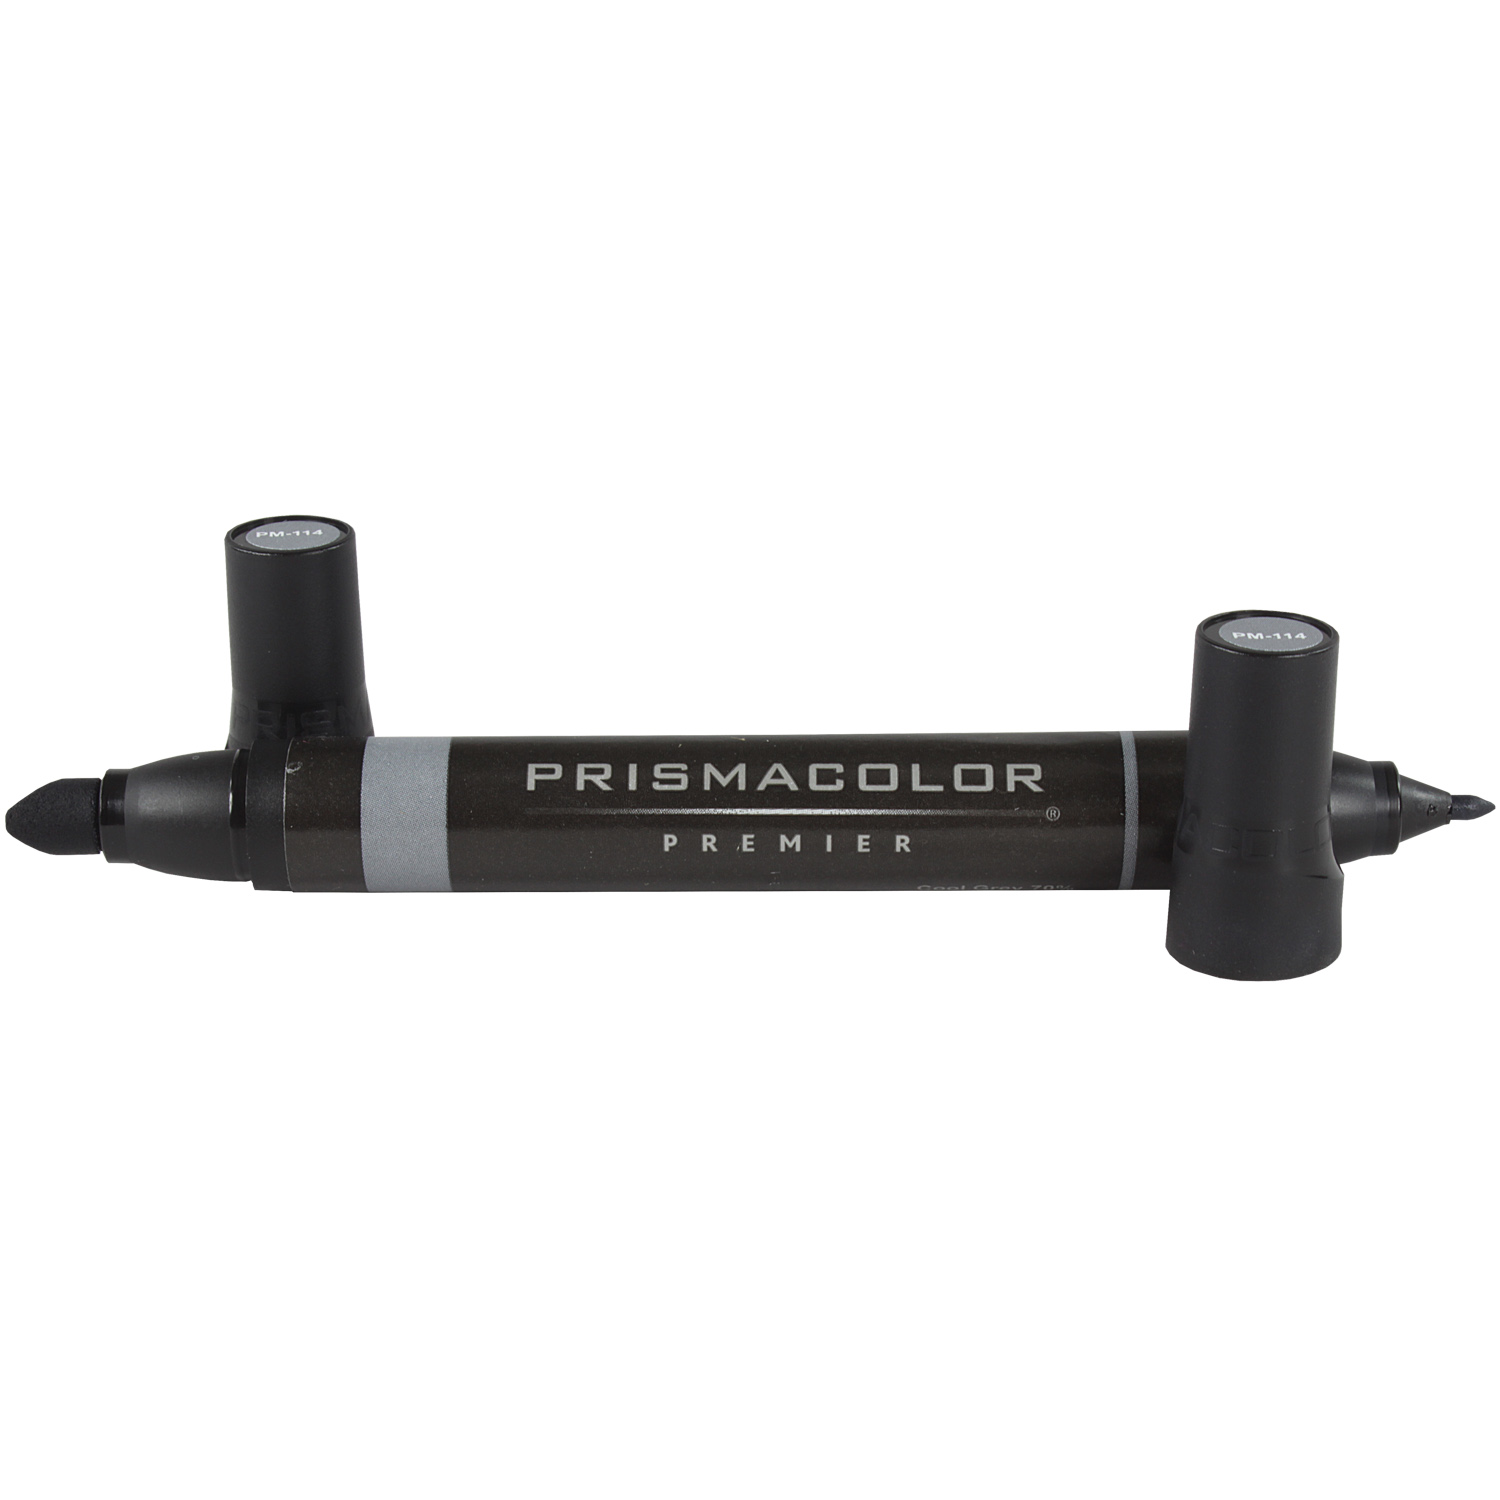 Marcador en base alcohol Prismacolor Premier